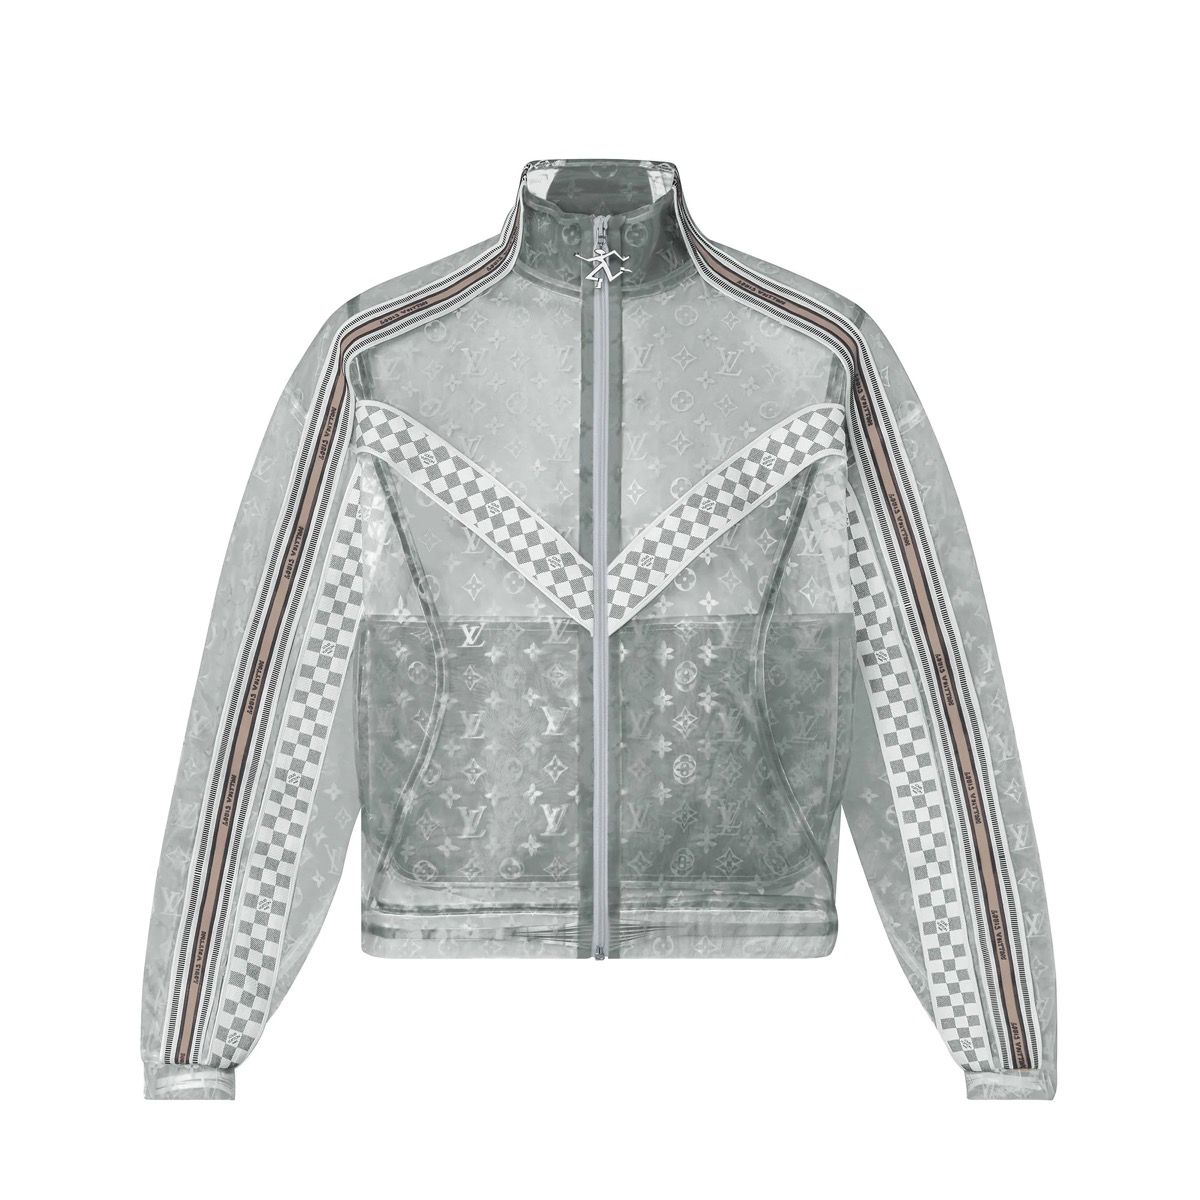 Louis Vuitton 2054 Hoodie Grailed Jacket